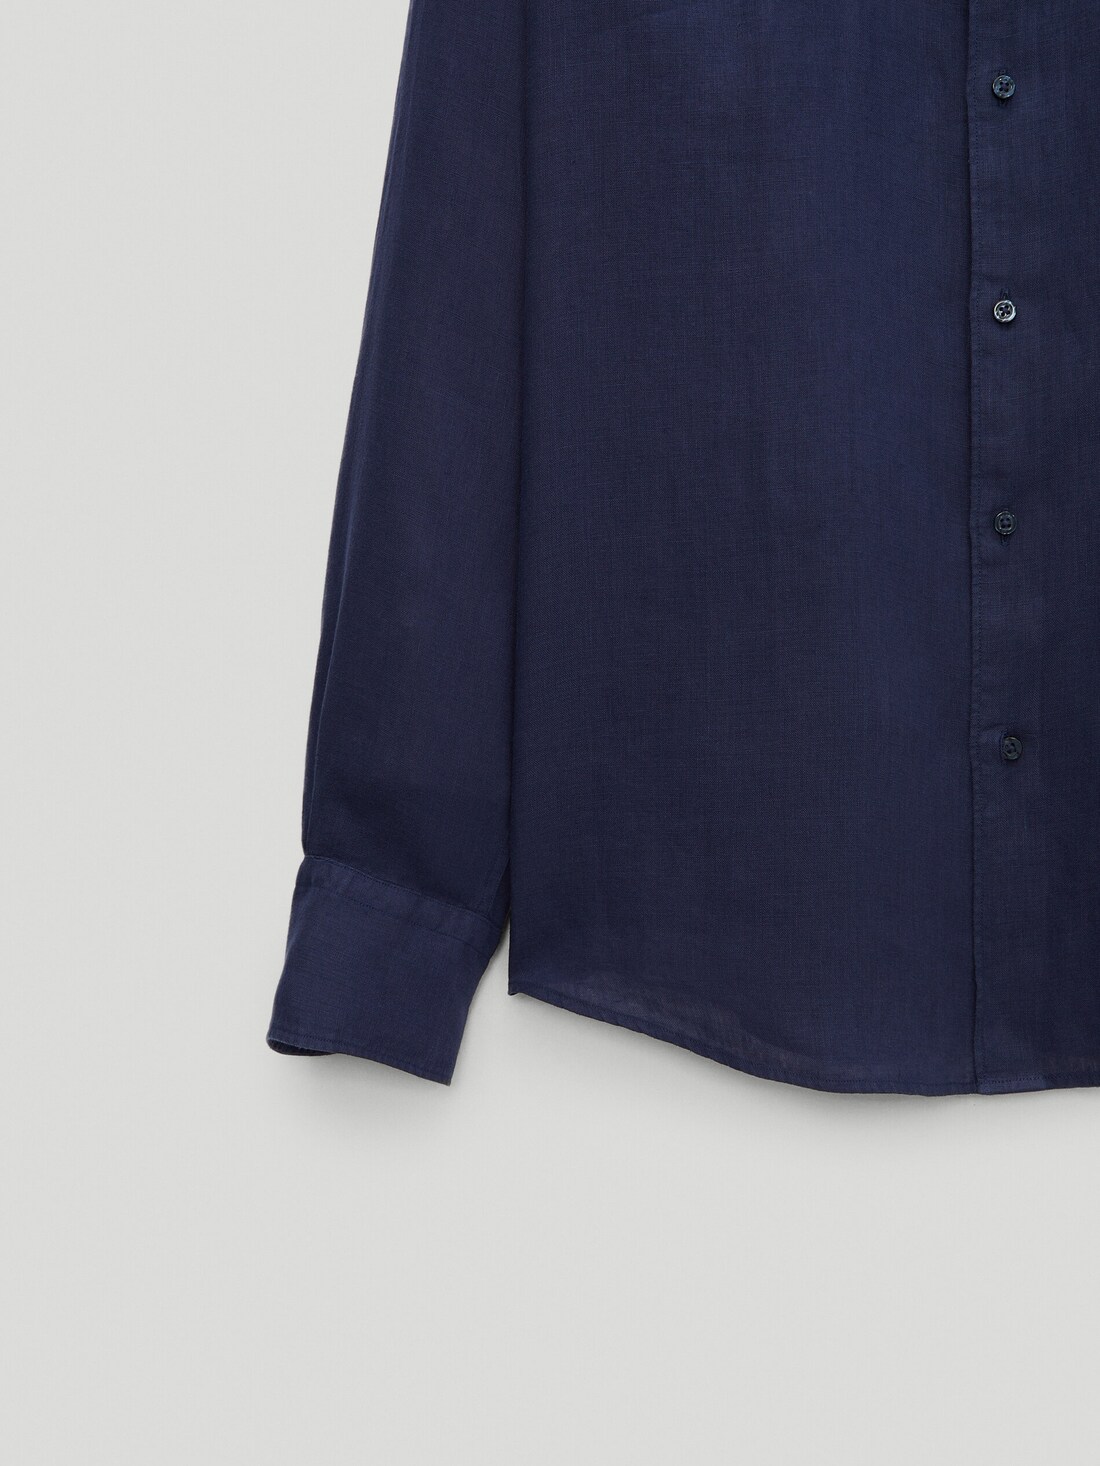 Рубашка облегающего кроя из 100% крашеного льна СИНИЙ Massimo Dutti